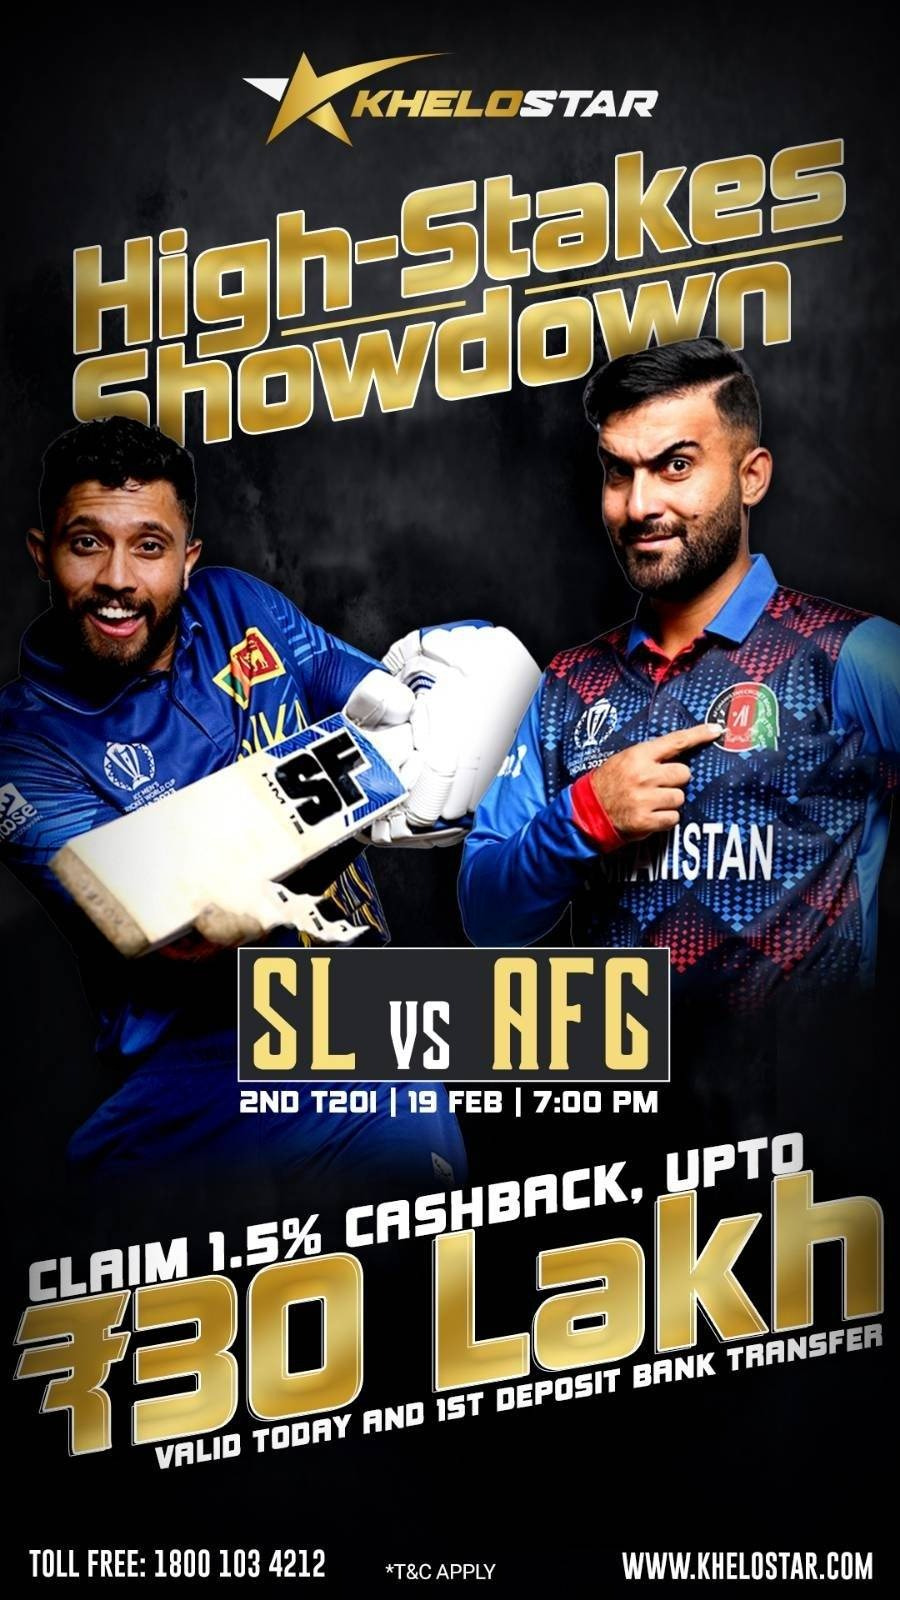 High-stakes showdown SL vs AFG